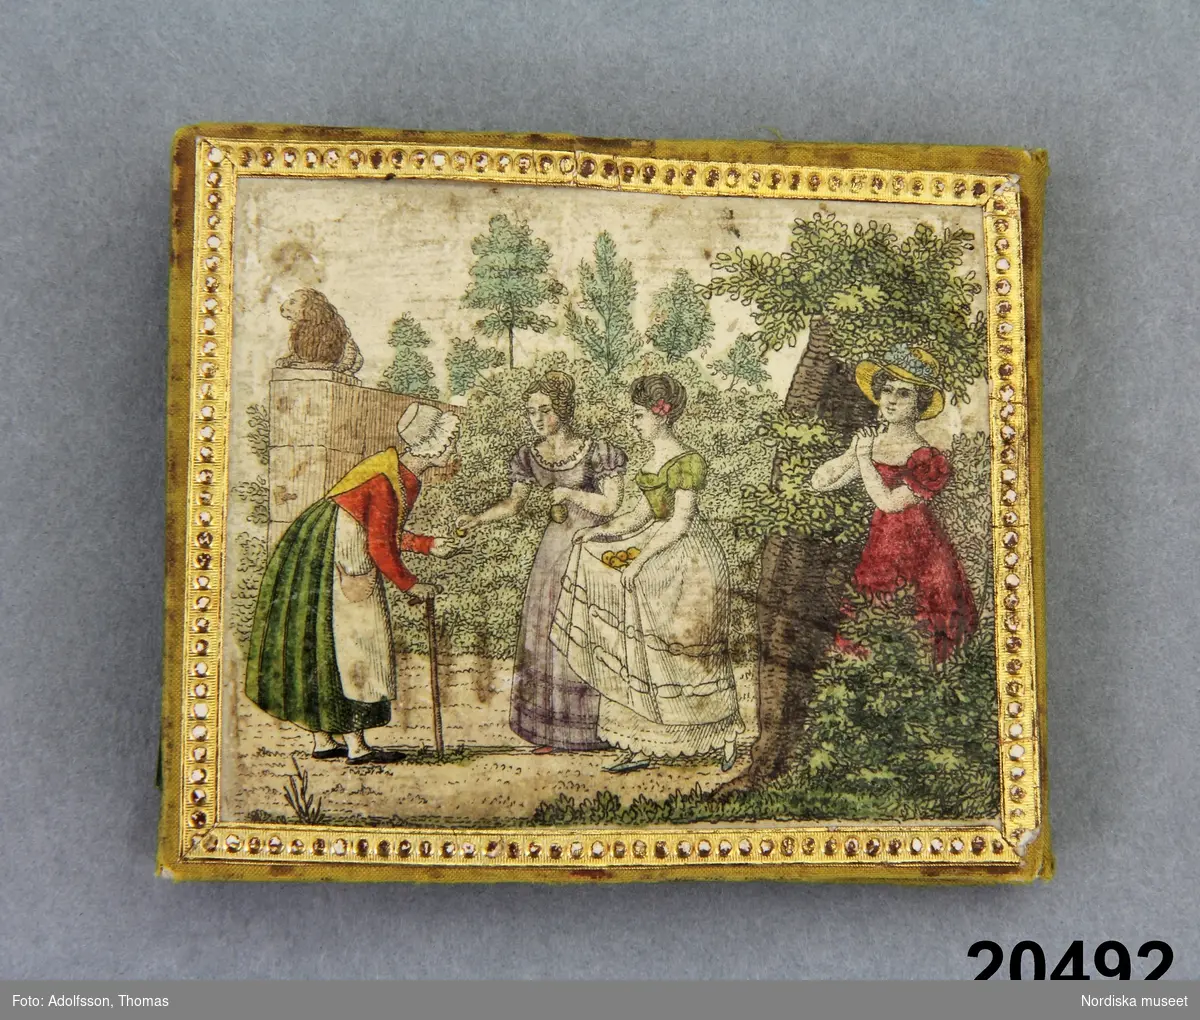 3 kvinnor som handarbetar i en utomhusscen, 2 modeklädda män. 1825-30 års modedräkt
3 unga  kvinnor i  möte med en äldre kvinna med käpp. omkr. 1825-30 års modedräkt
Antik yngling med lyra
Amor med pilbåge
Militäruppställning